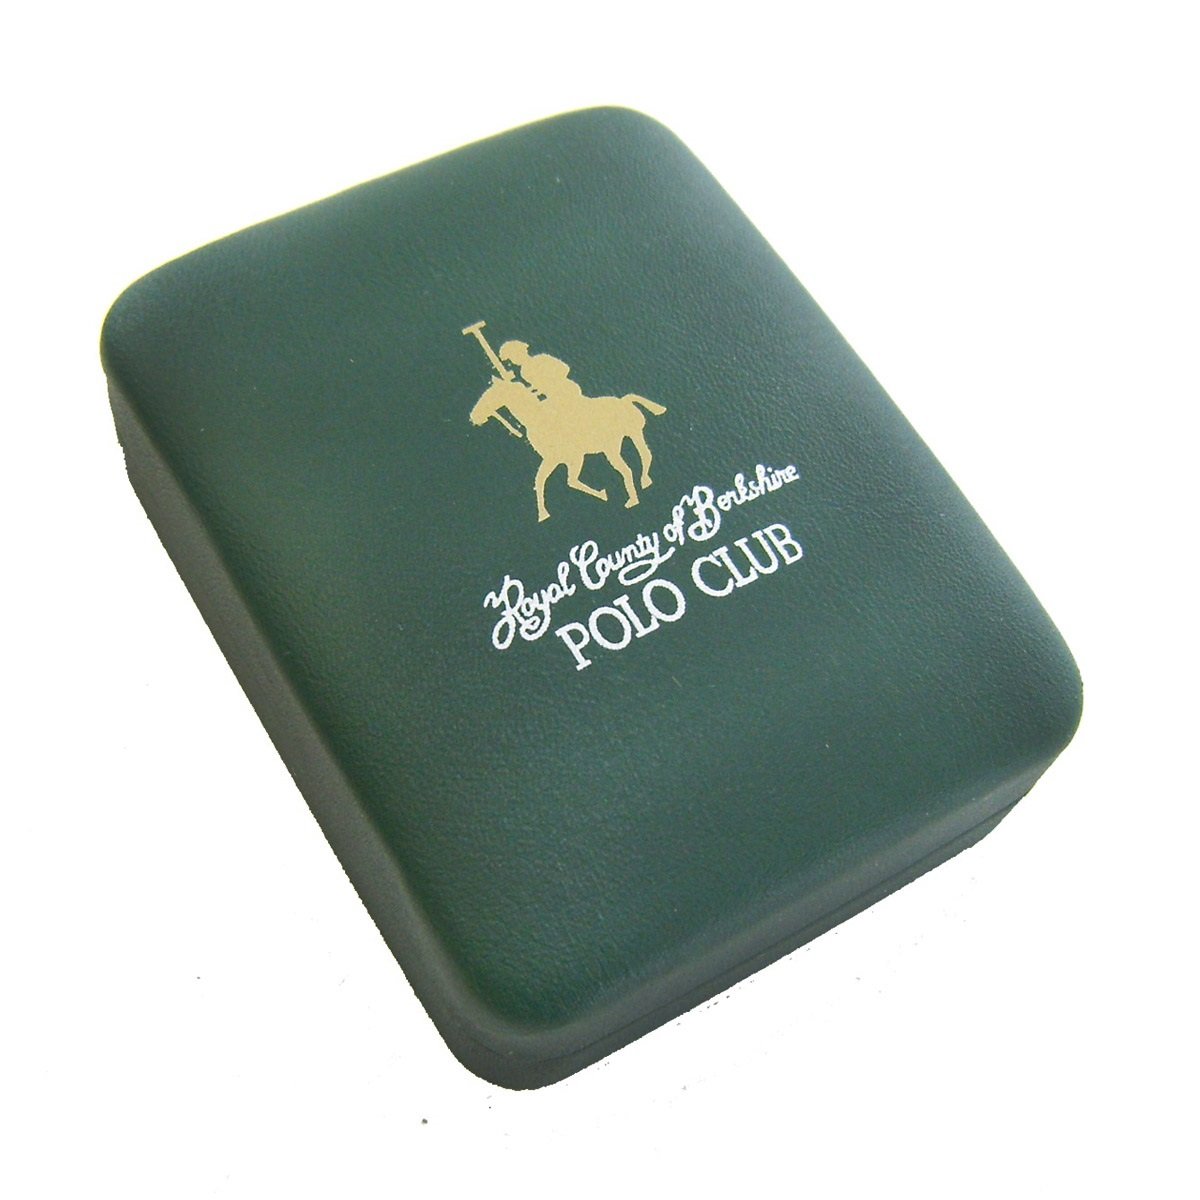 Mancuernas para Hombre Rcb Polo Club